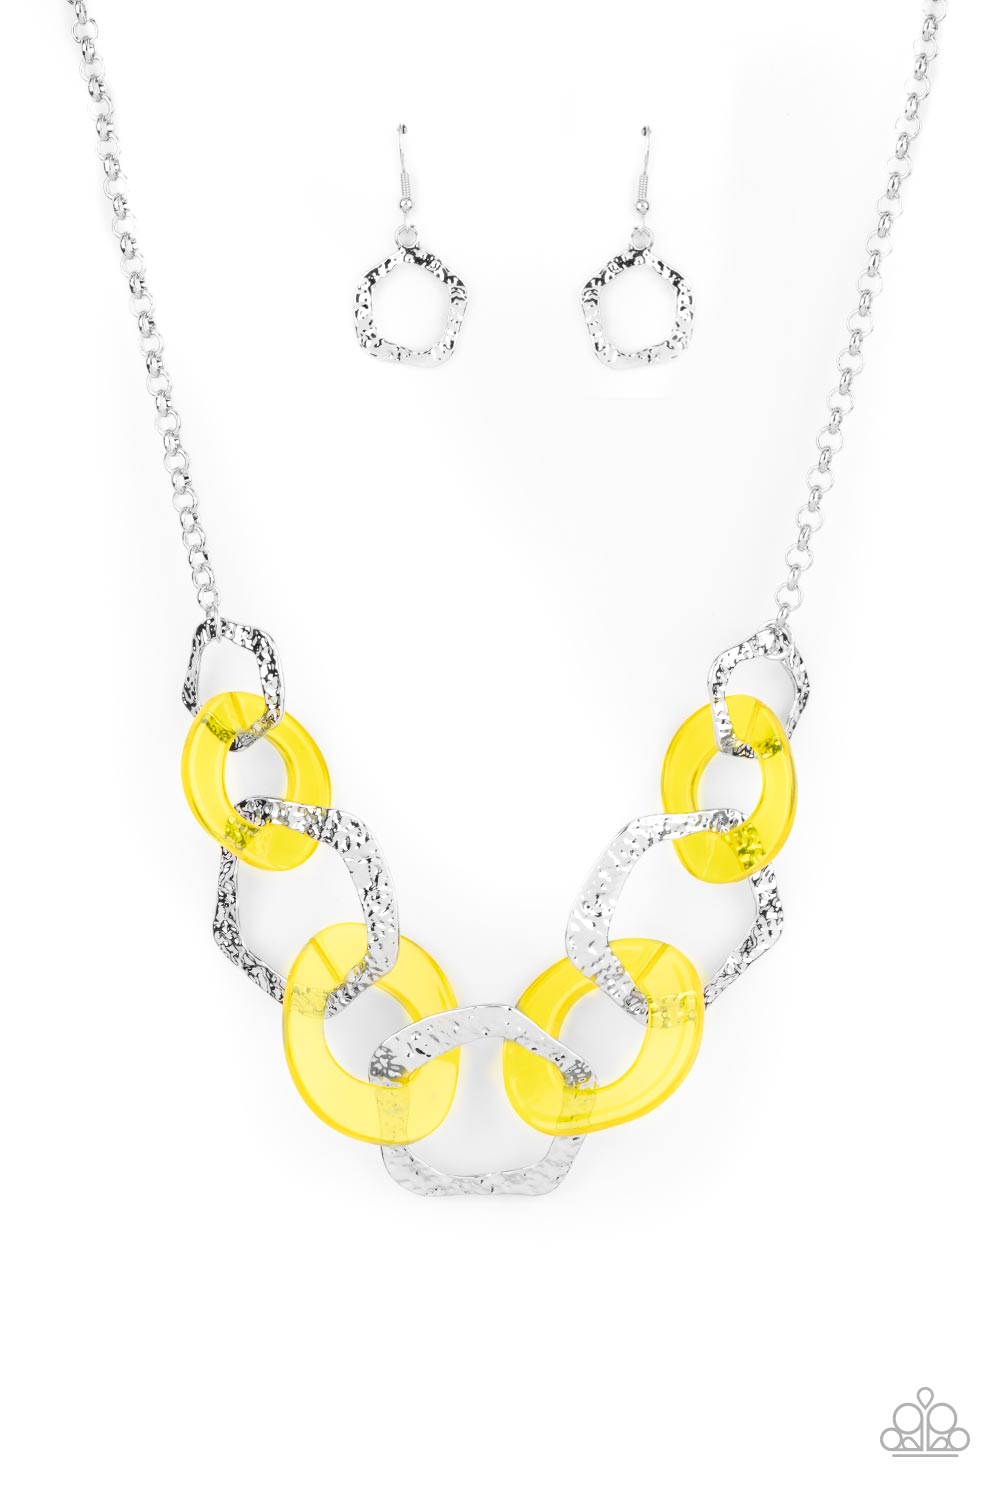 Urban Circus - Yellow Necklace Set - Princess Glam Shop